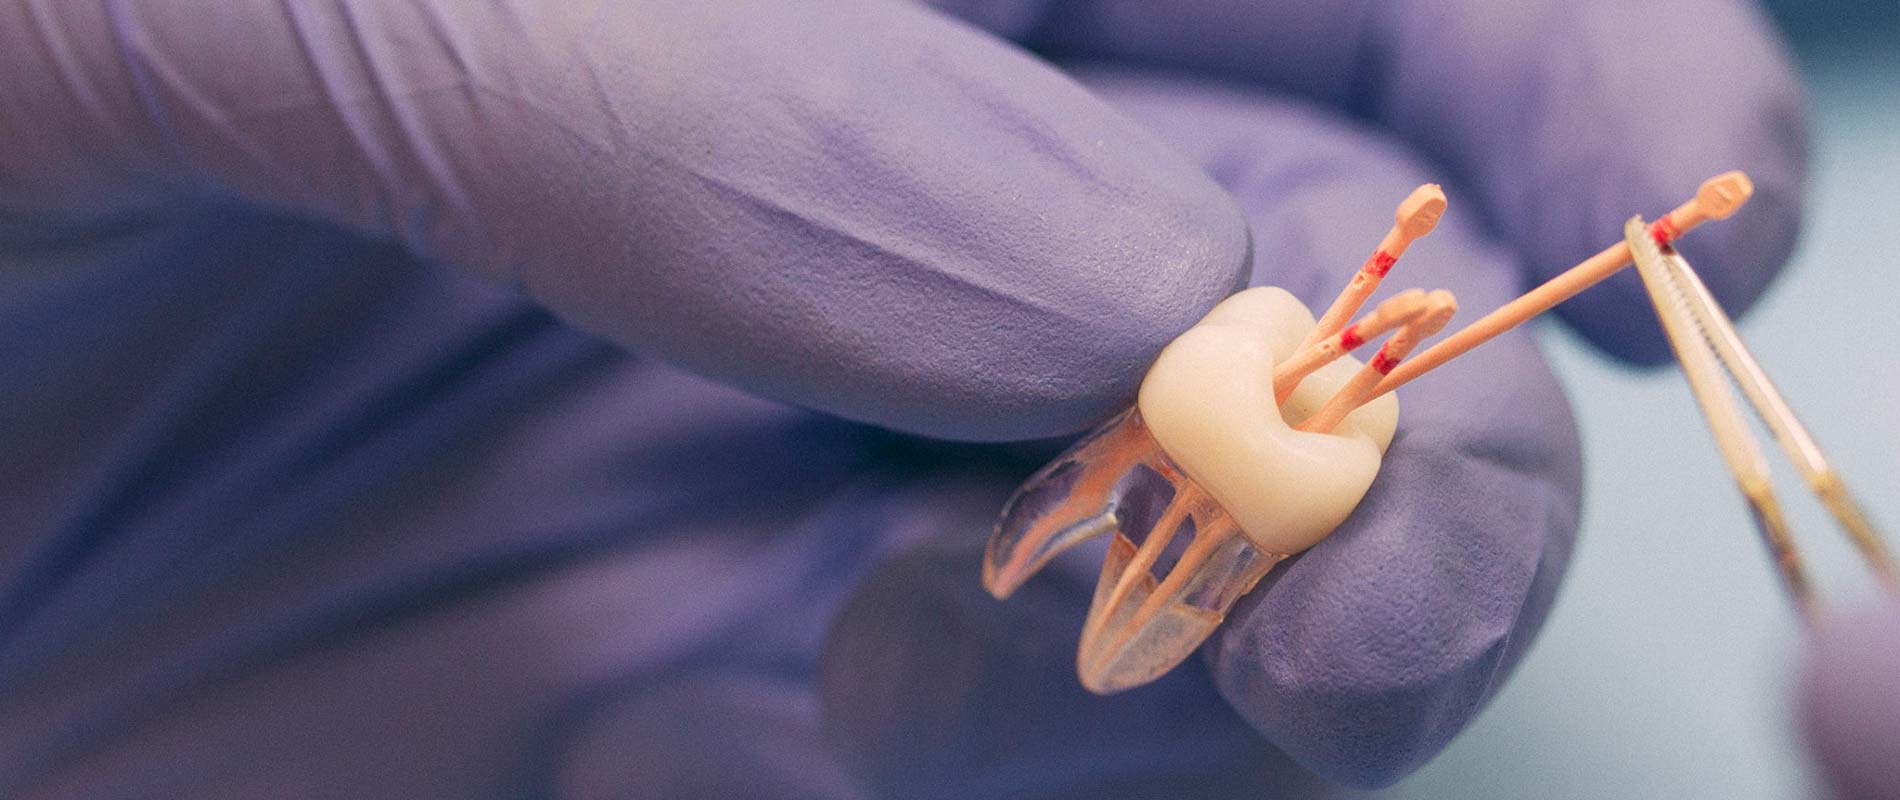 Zahnärztin erklärt Wurzelbehandlung mit Hilfe eines Zahnmodells. 